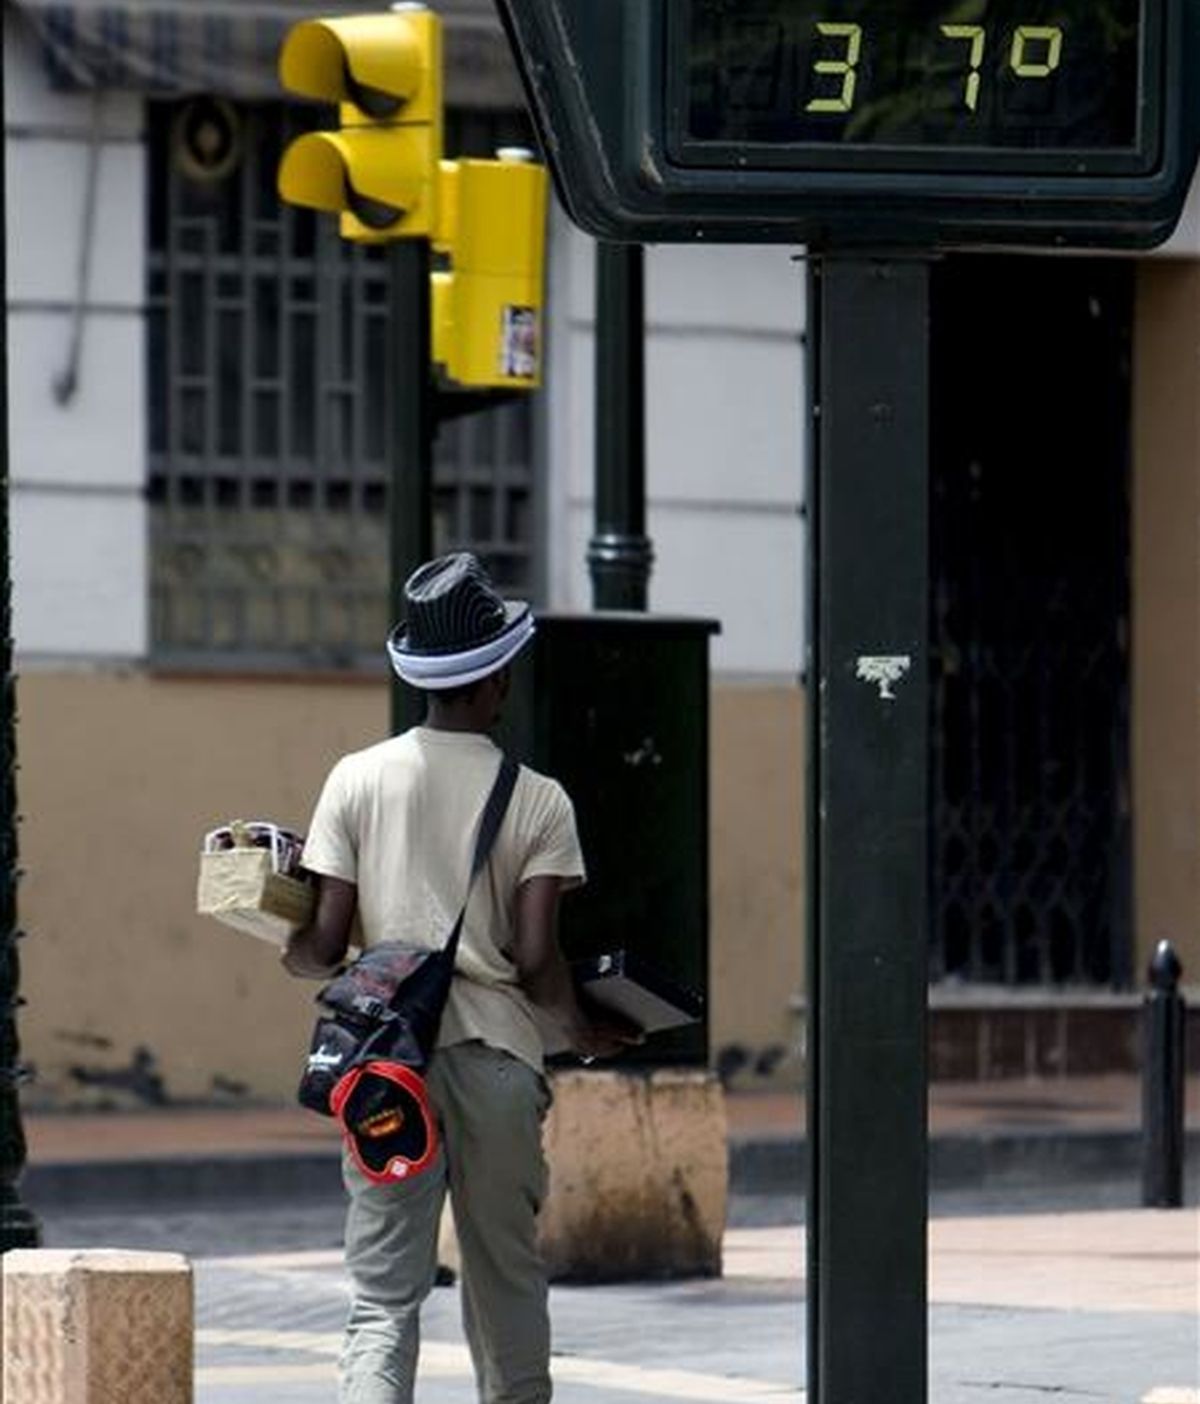 Un vendedor ambulante pasea bajo un termómetro en el casco histórico de Zaragoza. EFE